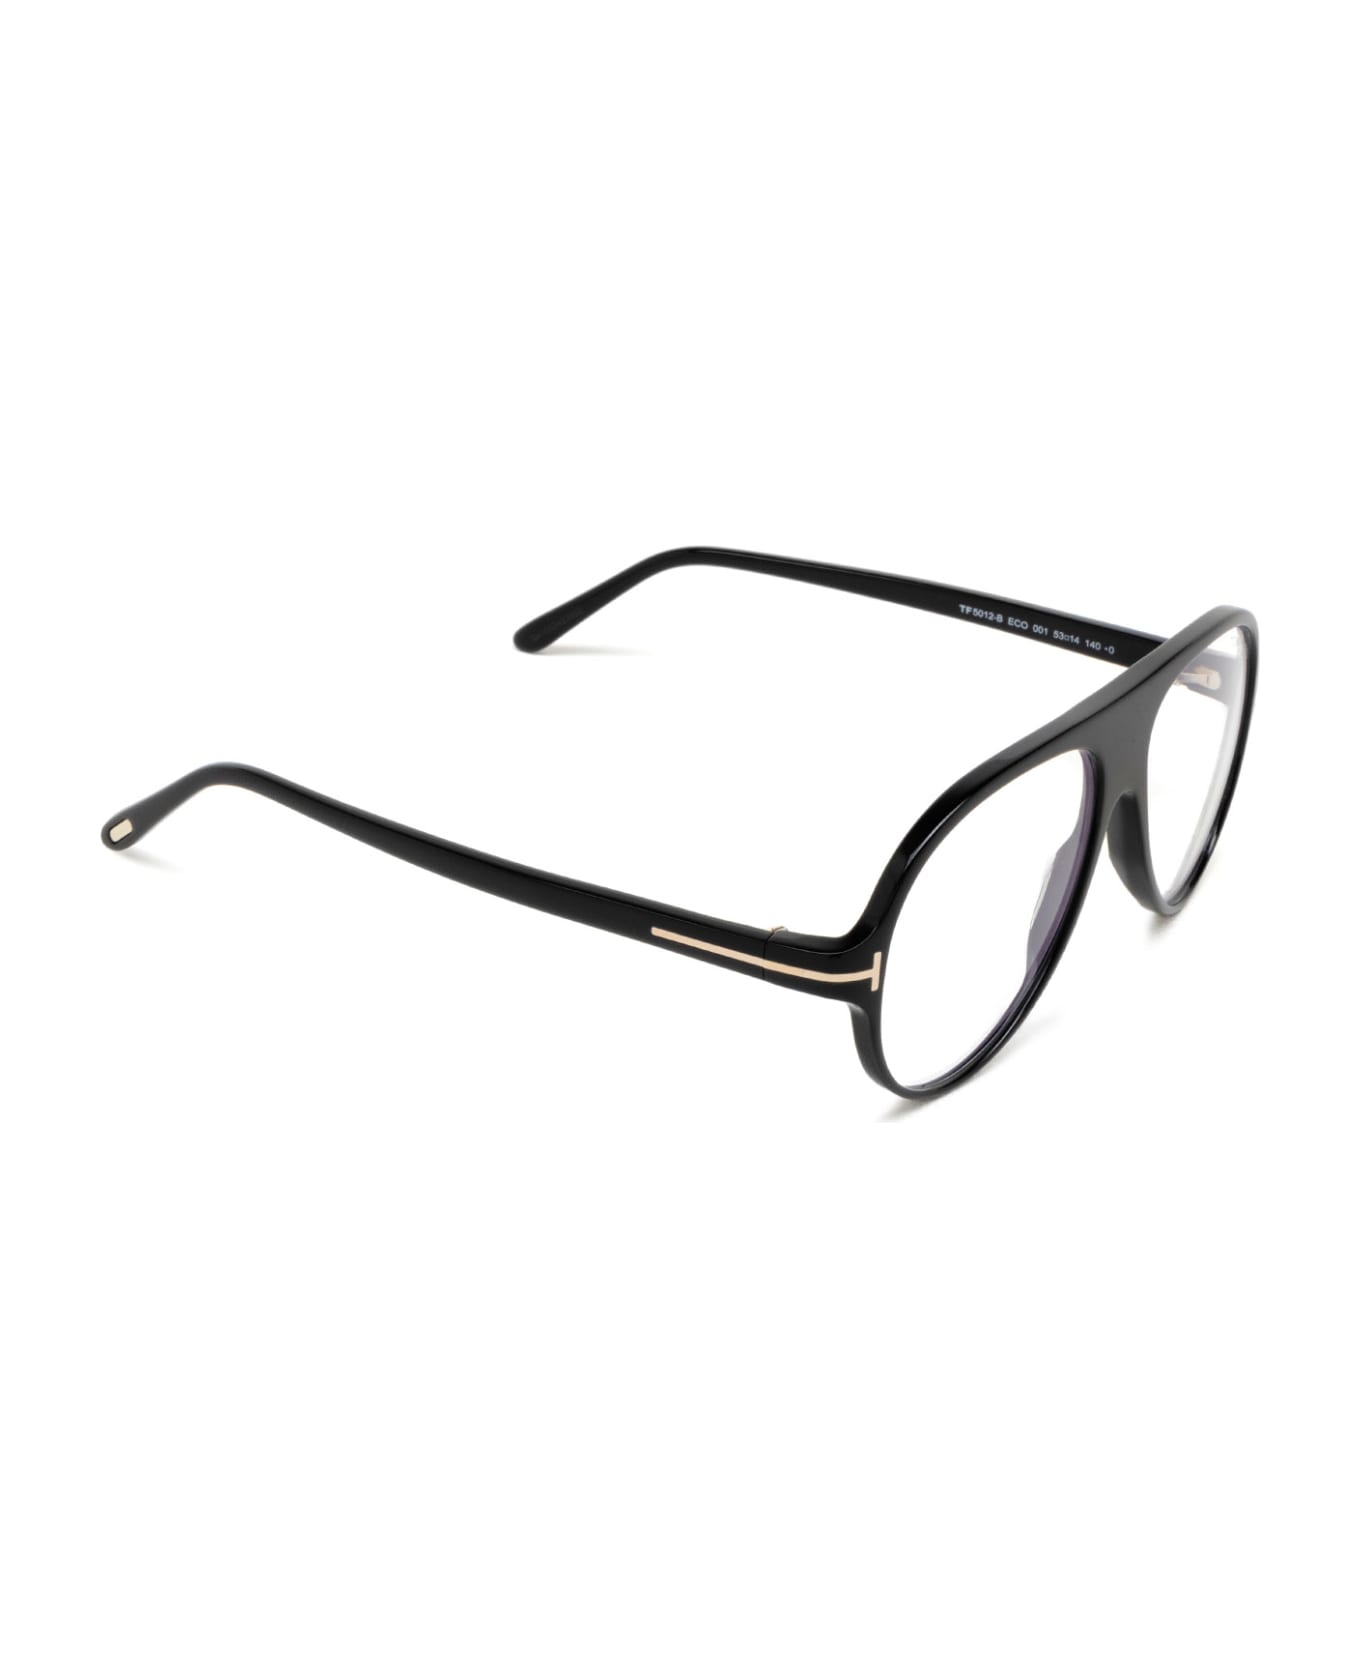 Tom Ford Eyewear Ft5012-b Shiny Black Glasses - Shiny Black